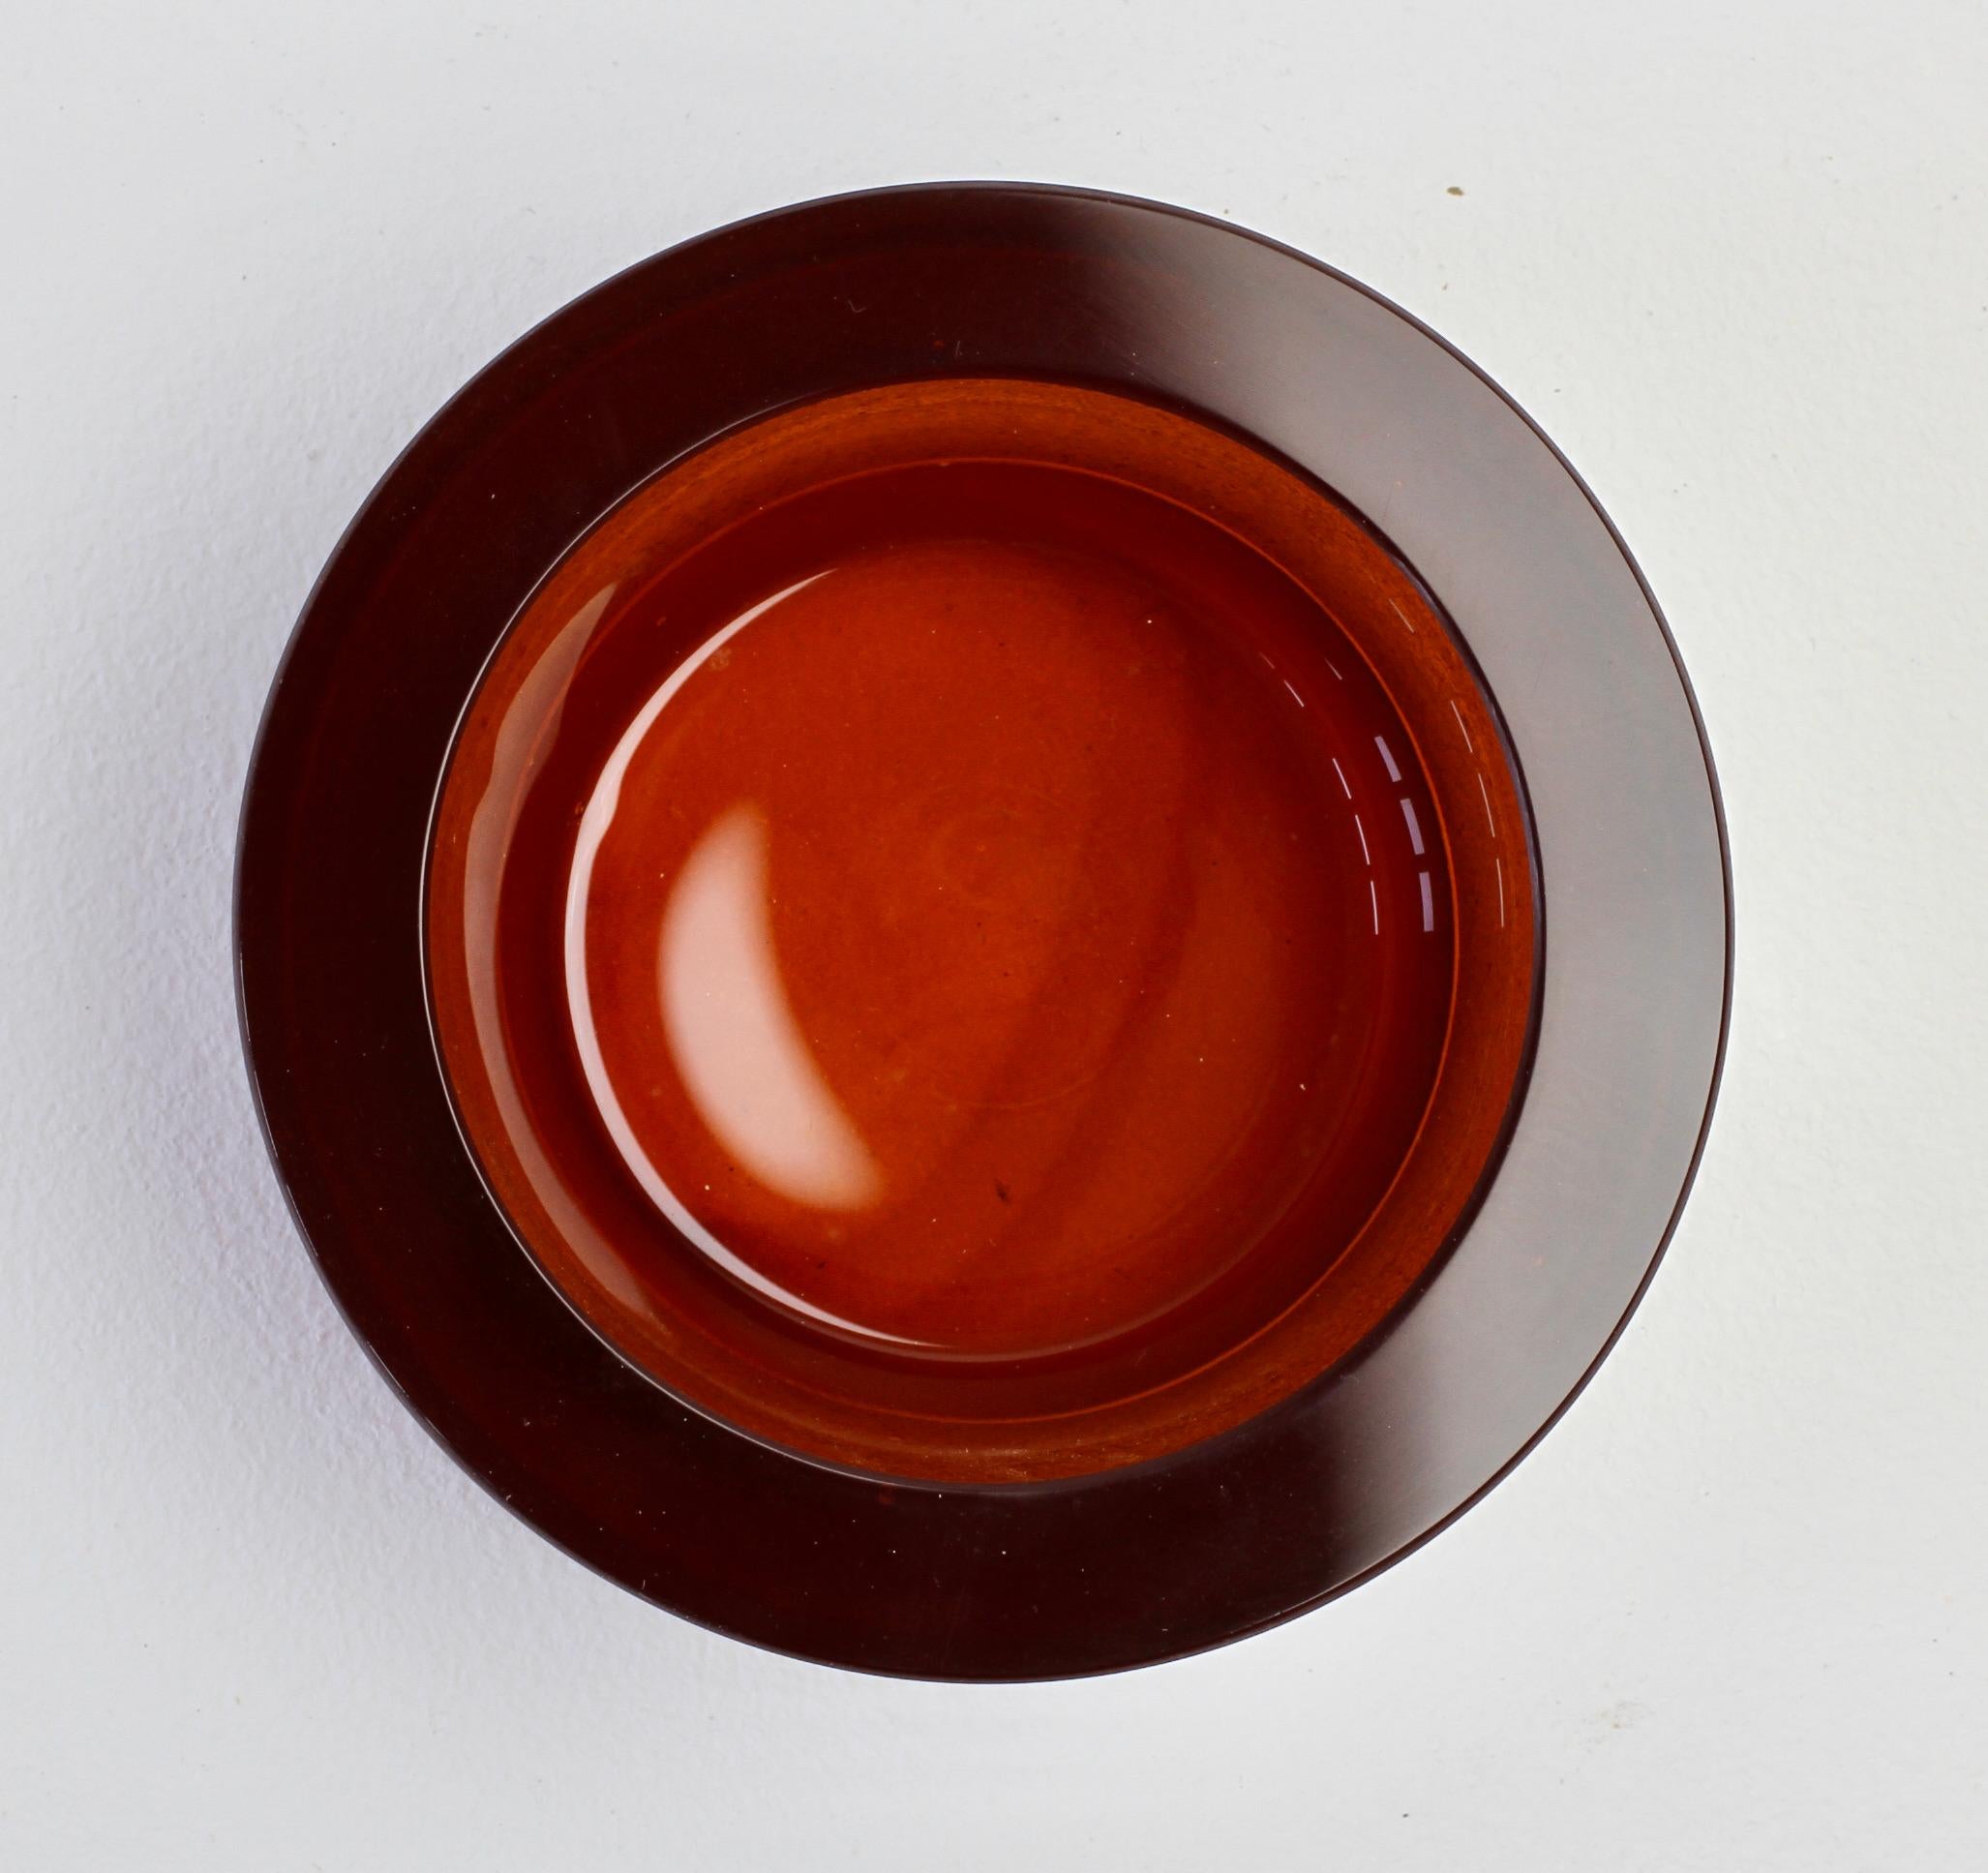 Superbe bol, plat ou cendrier circulaire en verre ambré brun miel 'a CIRCA' blanc / coloré de Seguso Vetri d'Arte Murano, Italie, vers les années 1980. Elegant dans sa forme - plutôt minimaliste mais avec un signe évident de qualité avec la lèvre